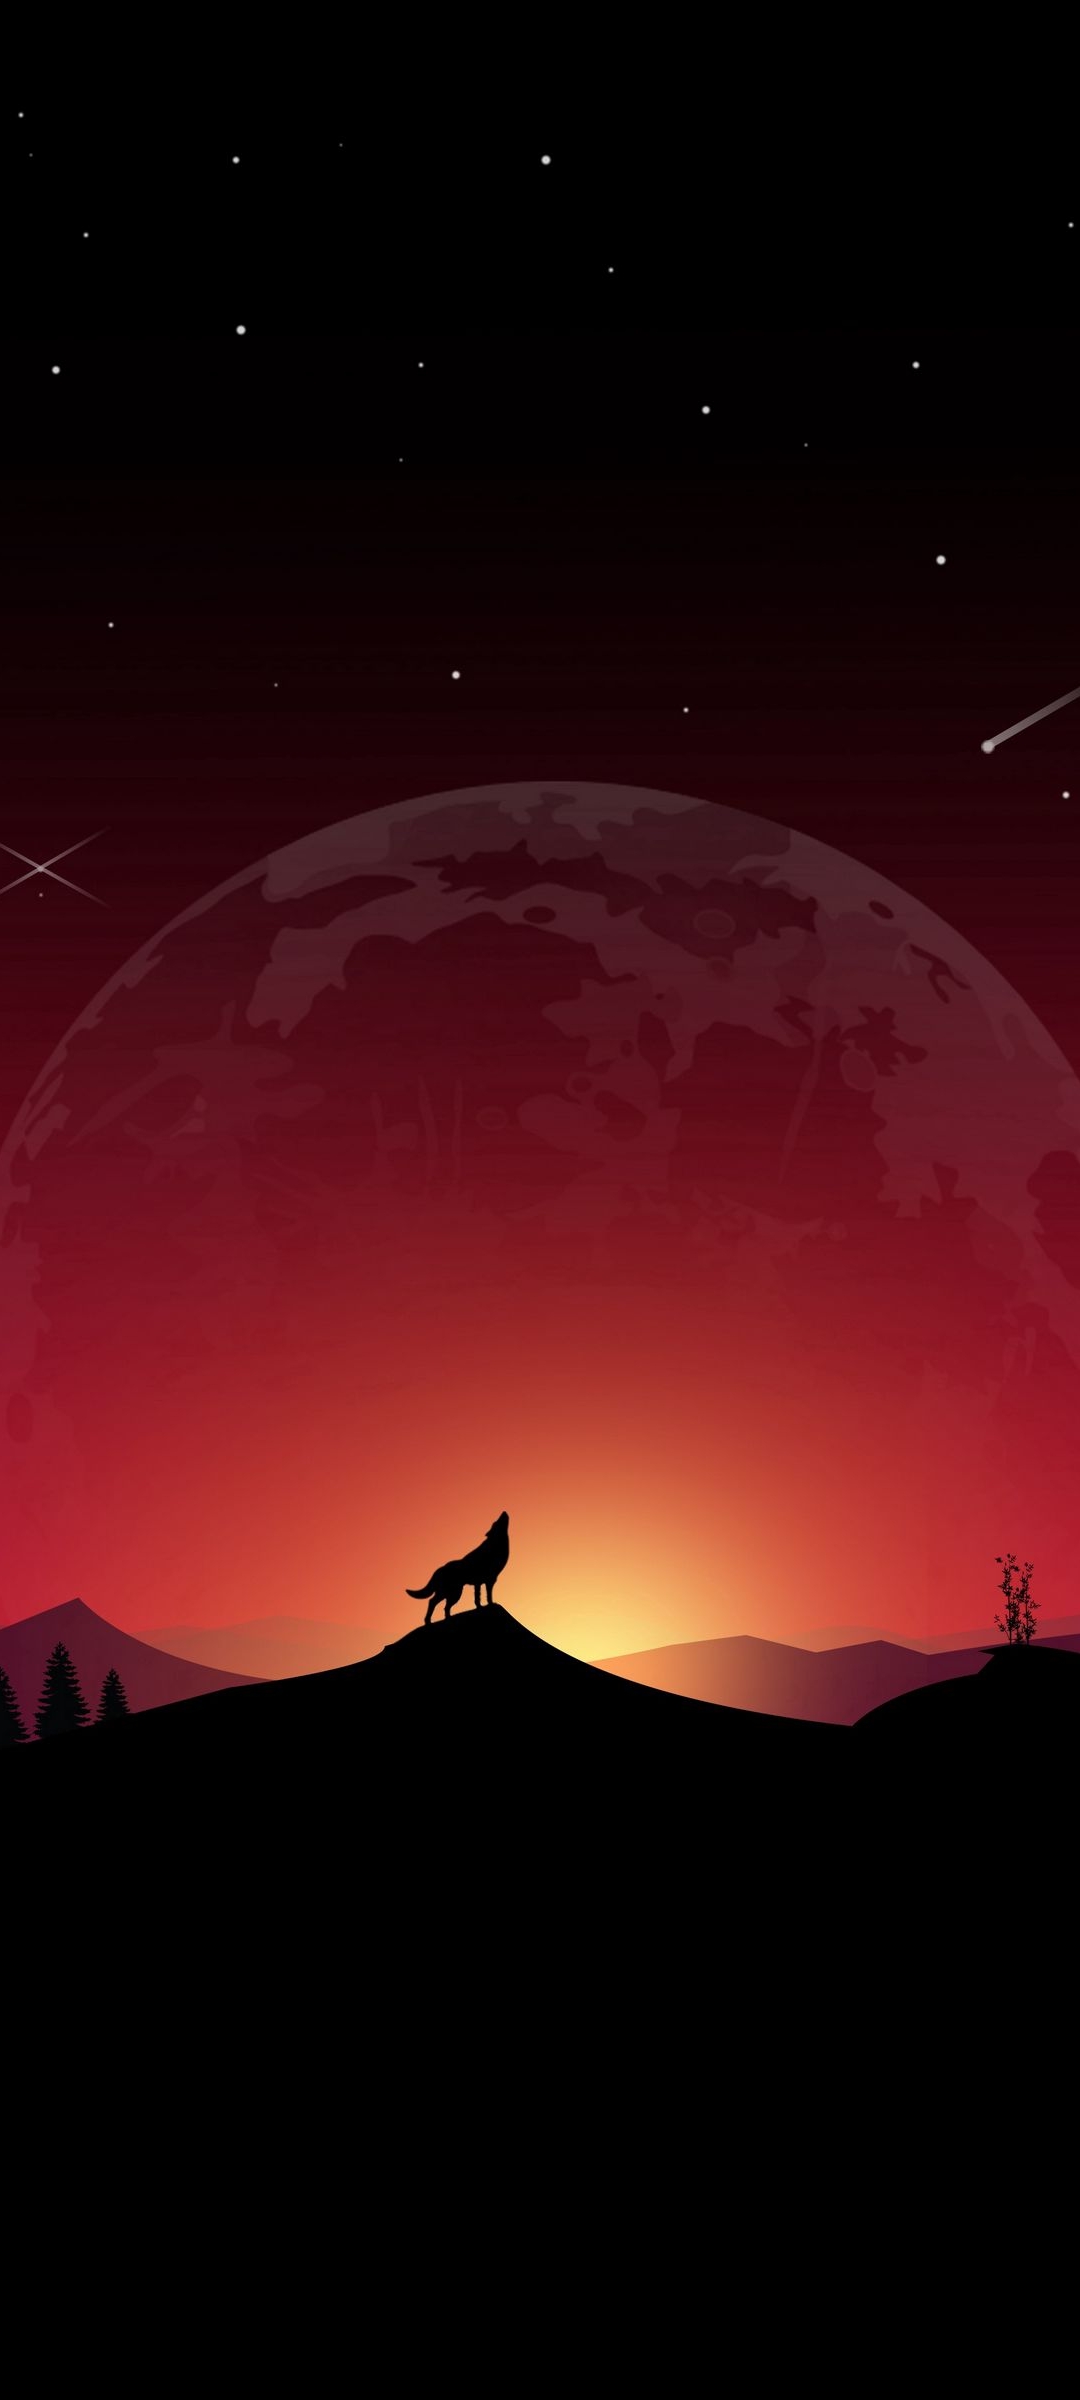 Những con sói cùng bầu trời đỏ là một khung cảnh đẹp mê đắm. Bạn sẽ cảm nhận được sức mạnh và đẳng cấp của những con sói khi đối đầu với bầu trời đỏ rực. Hãy xem hình ảnh liên quan để lựa chọn cho mình một tác phẩm nghệ thuật đẹp như tranh.